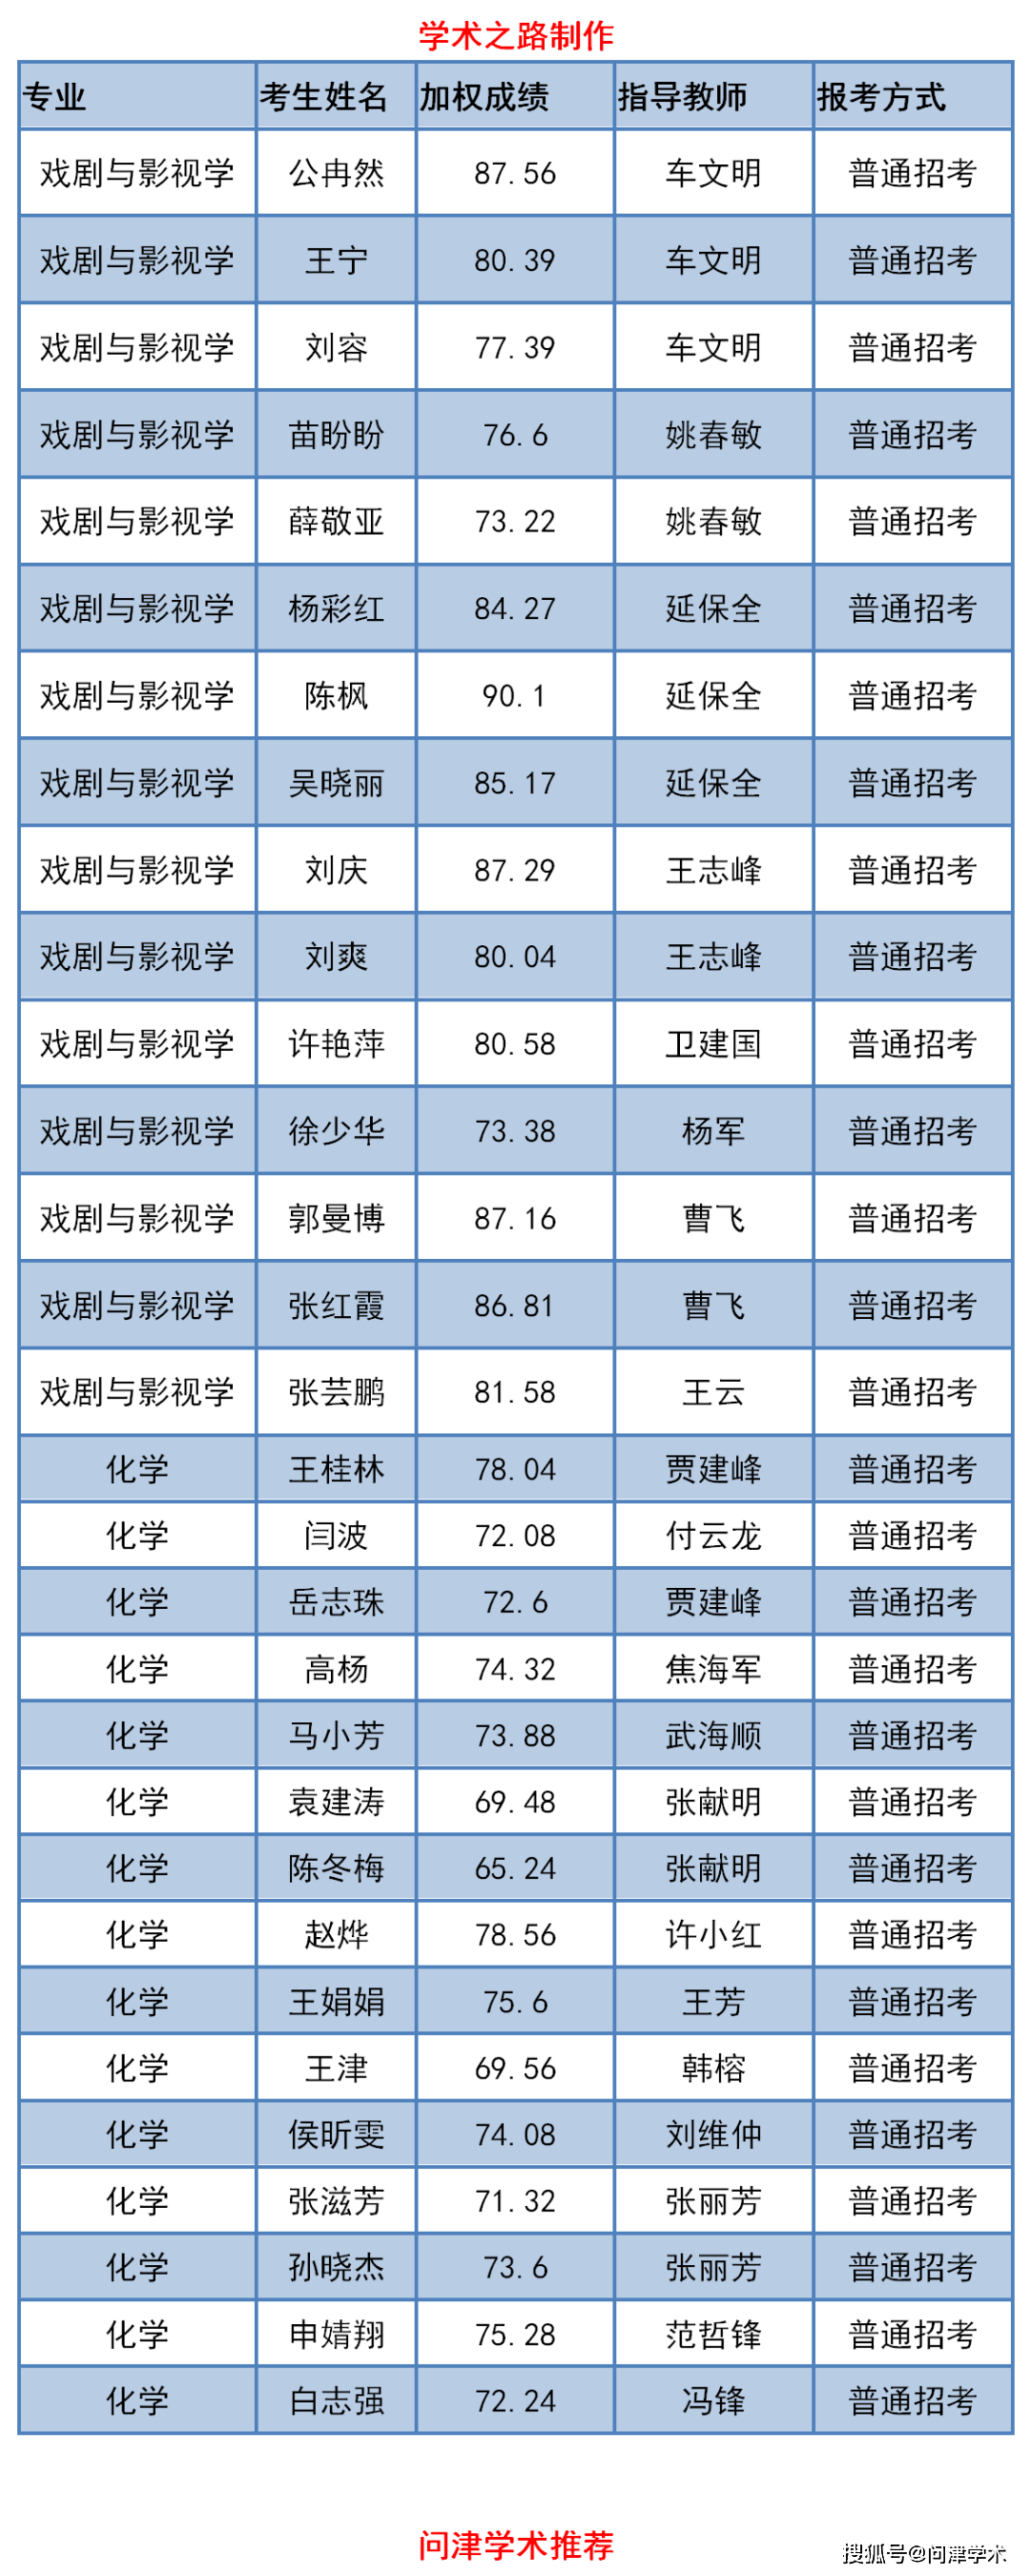 山西师范大学全排名_2009-06-2311:10:00来源:临汾新闻网